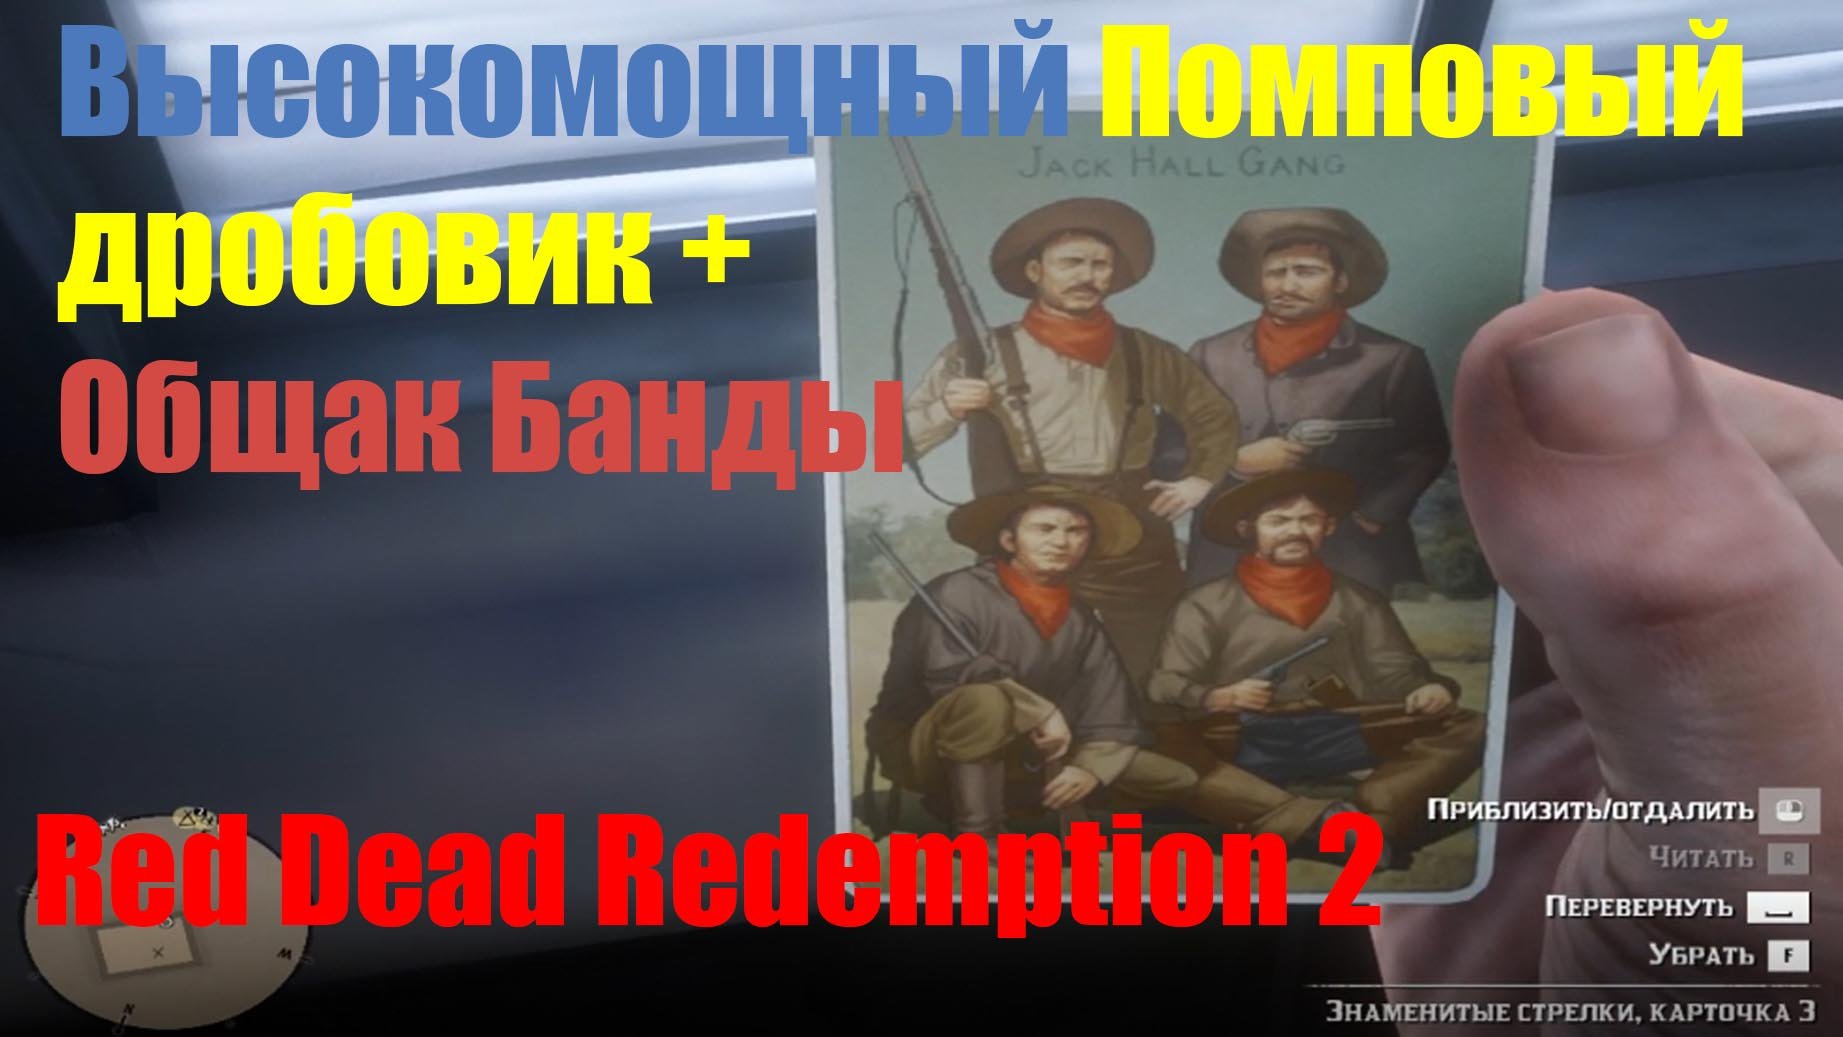 Red Dead Redemption 2 - Высокомощный Помповый дробовик+Общак Банды